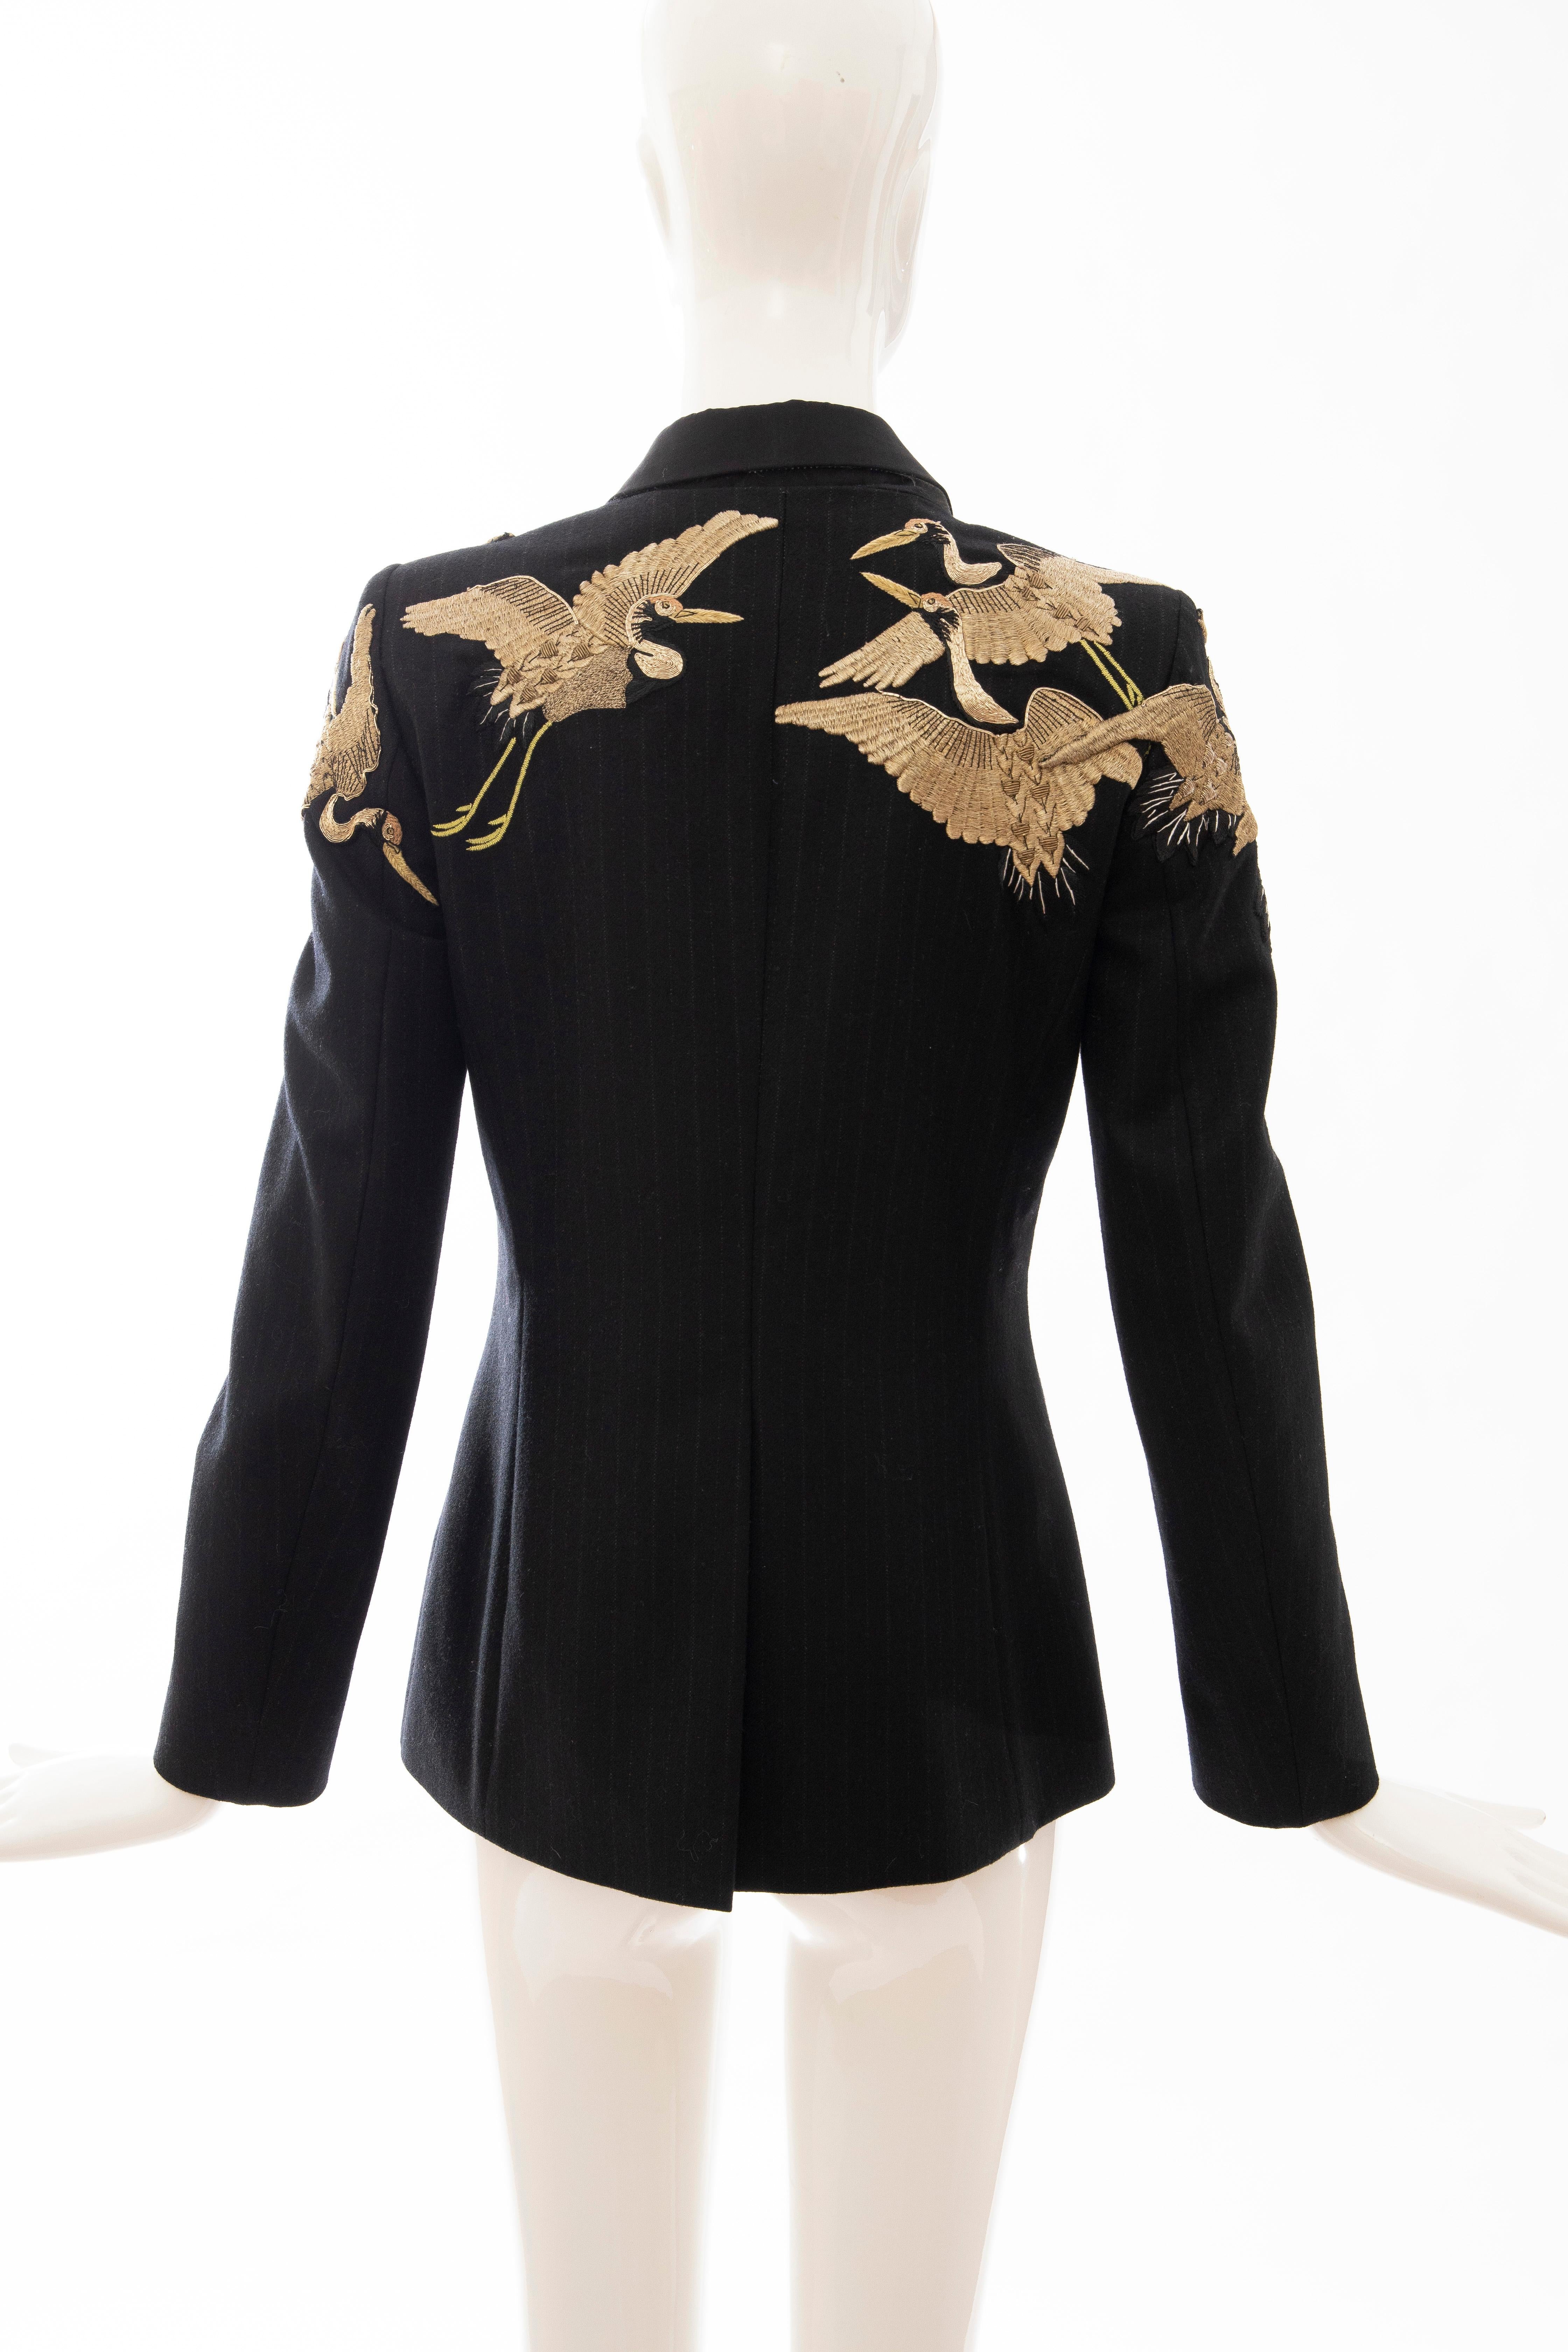 Dries van Noten Runway Black Wool Pinstripe Embroidered Jacket, Fall 2012 1